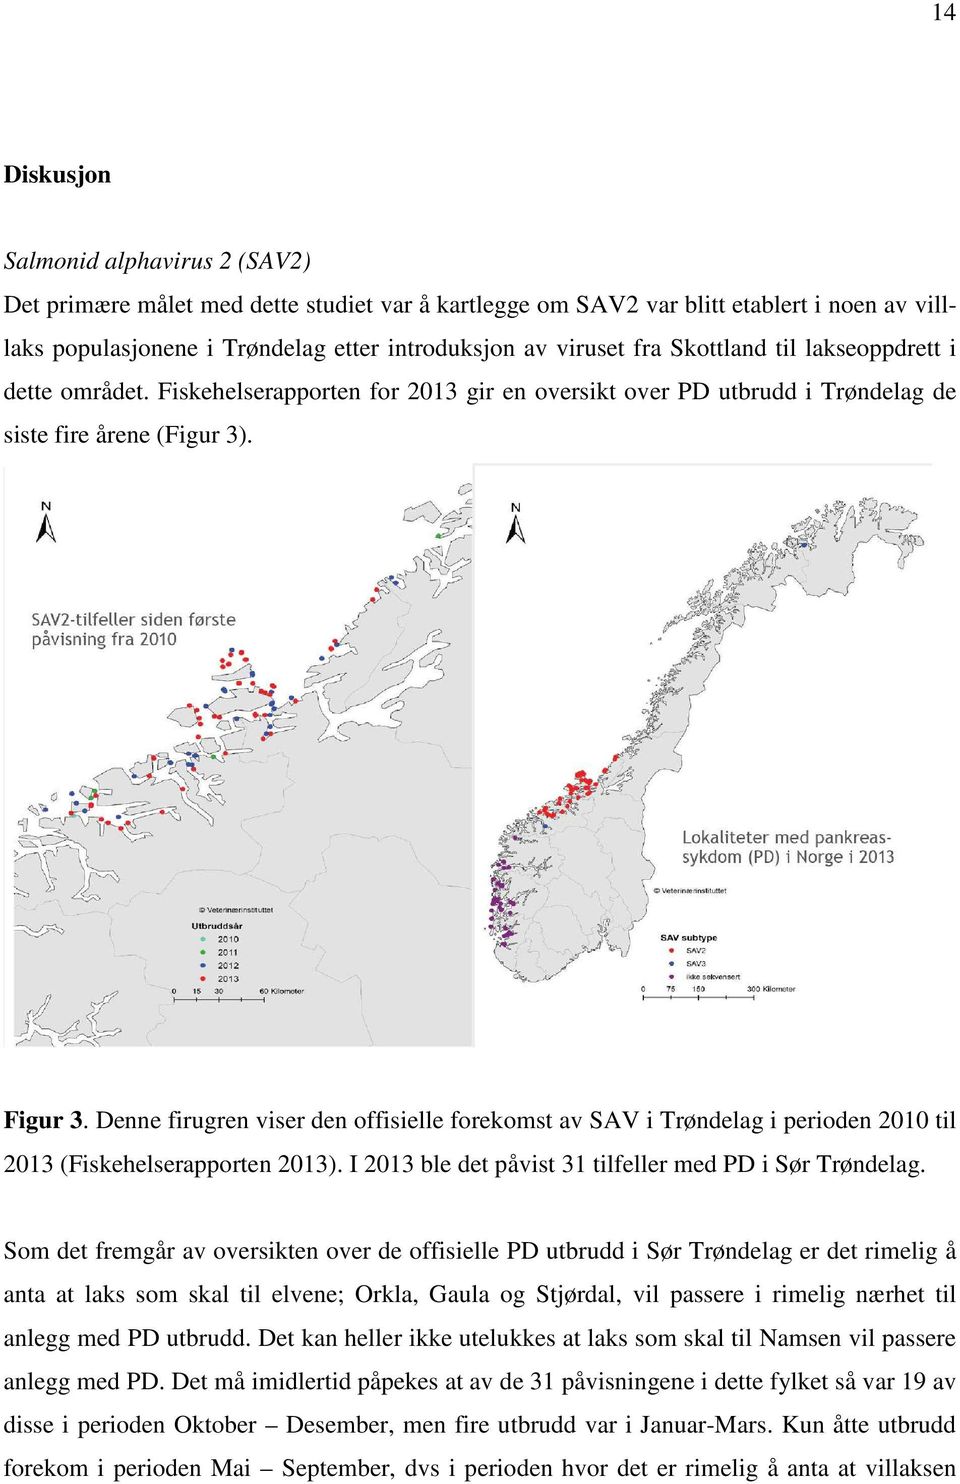 Denne firugren viser den offisielle forekomst av SAV i Trøndelag i perioden 2010 til 2013 (Fiskehelserapporten 2013). I 2013 ble det påvist 31 tilfeller med PD i Sør Trøndelag.